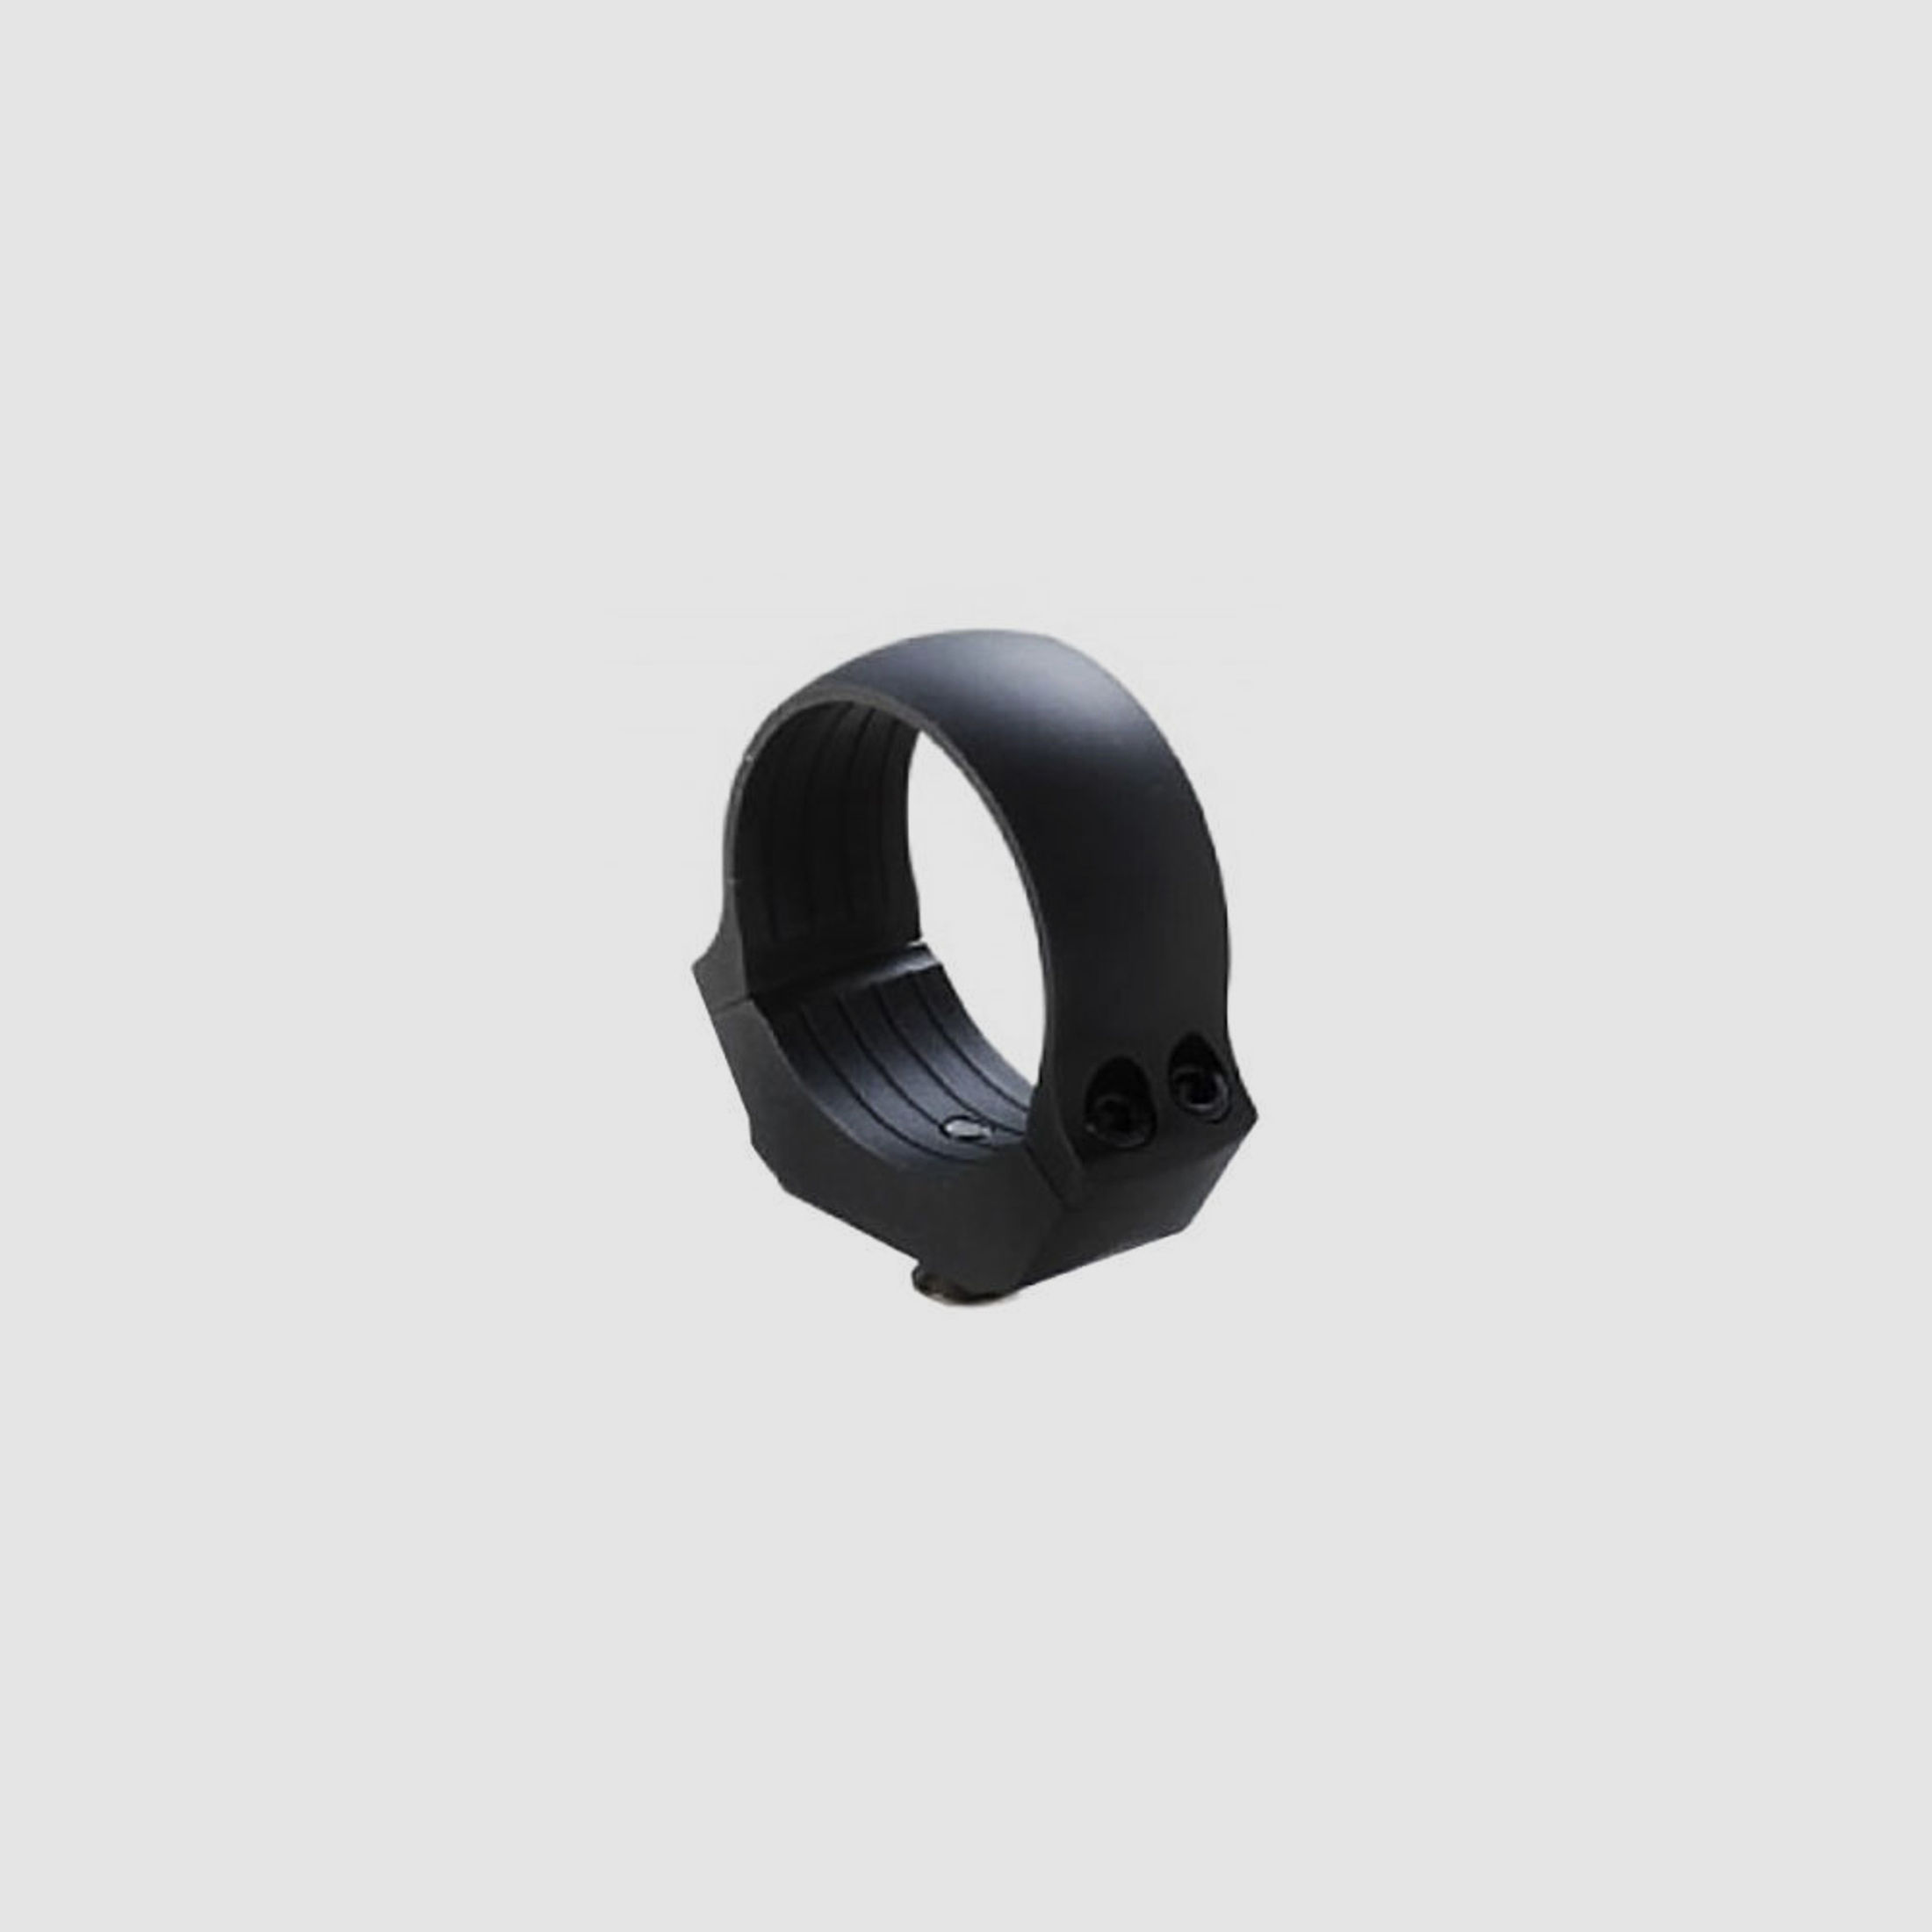 Dentler Dural Ring Montagering 30mm Durchmesser 9,5mm Höhe